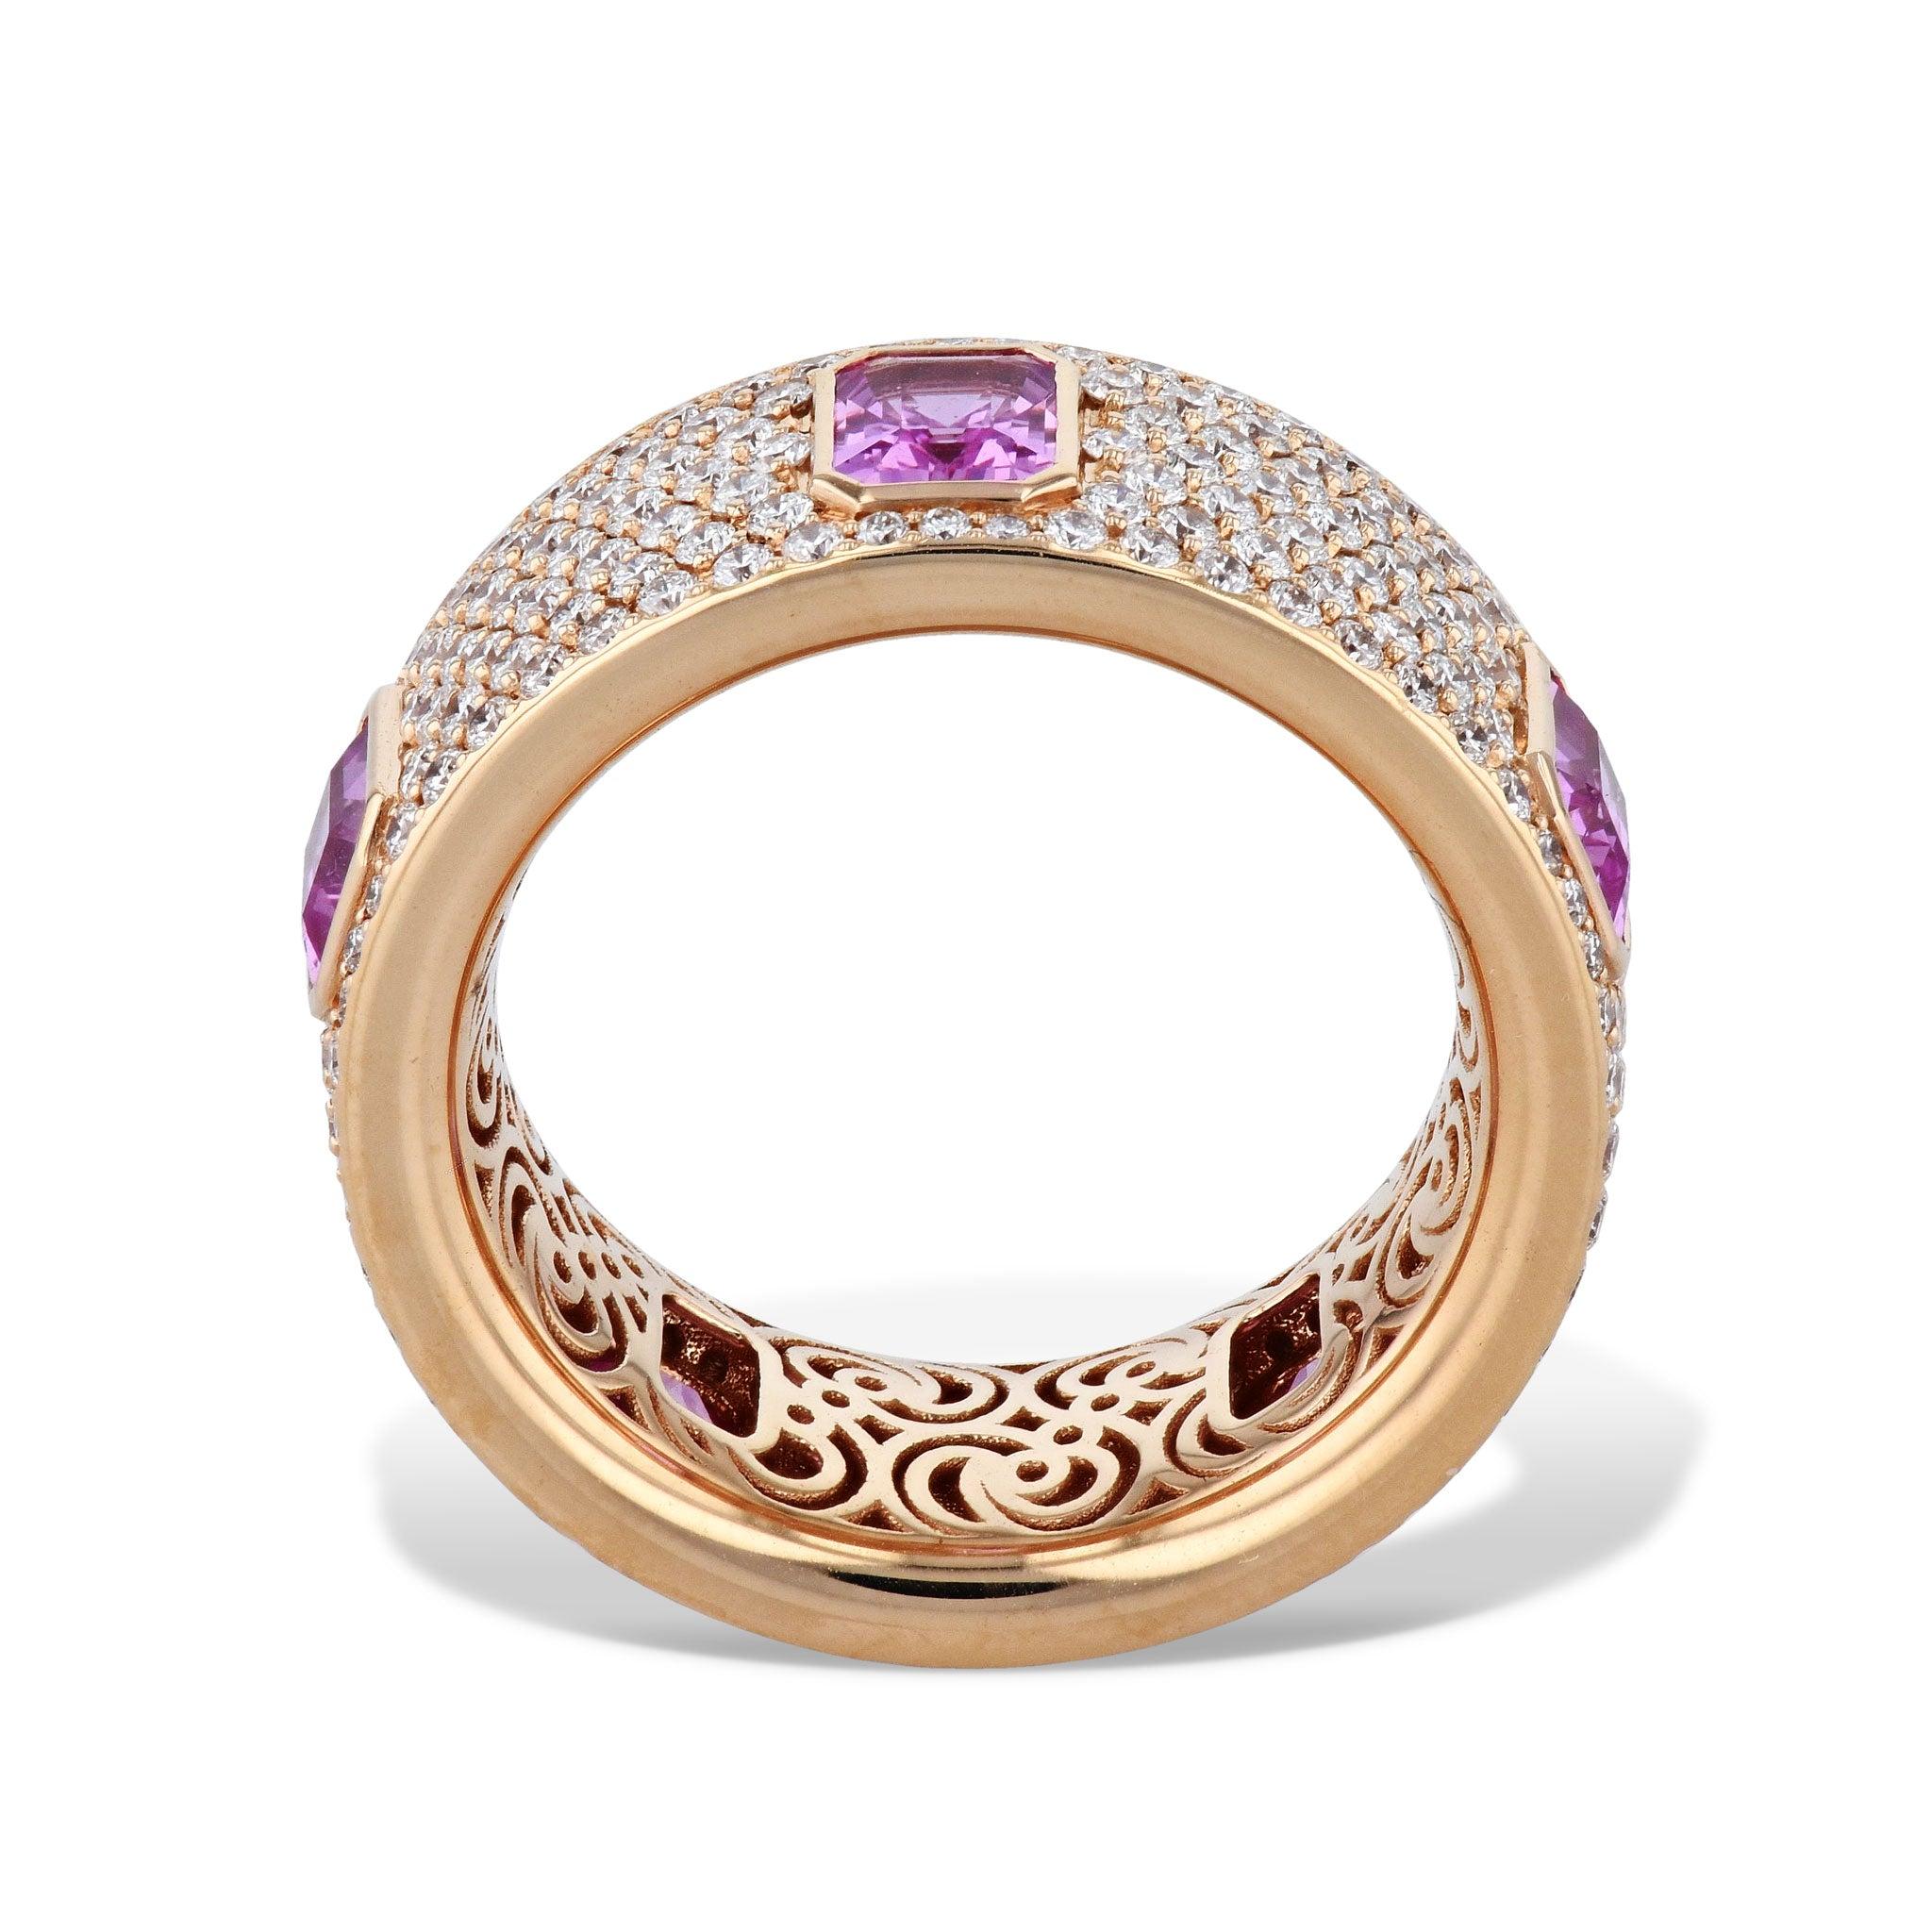 Dieser exquisite Pink Sapphire Diamond Pave 18K Pink Gold Ring bringt jeden Anlass zum Strahlen. Er besteht aus einem rosafarbenen Saphir und 1,97 Karat F-VS Diamanten, die in 18 Karat Roségold gefasst sind.  
Rosa